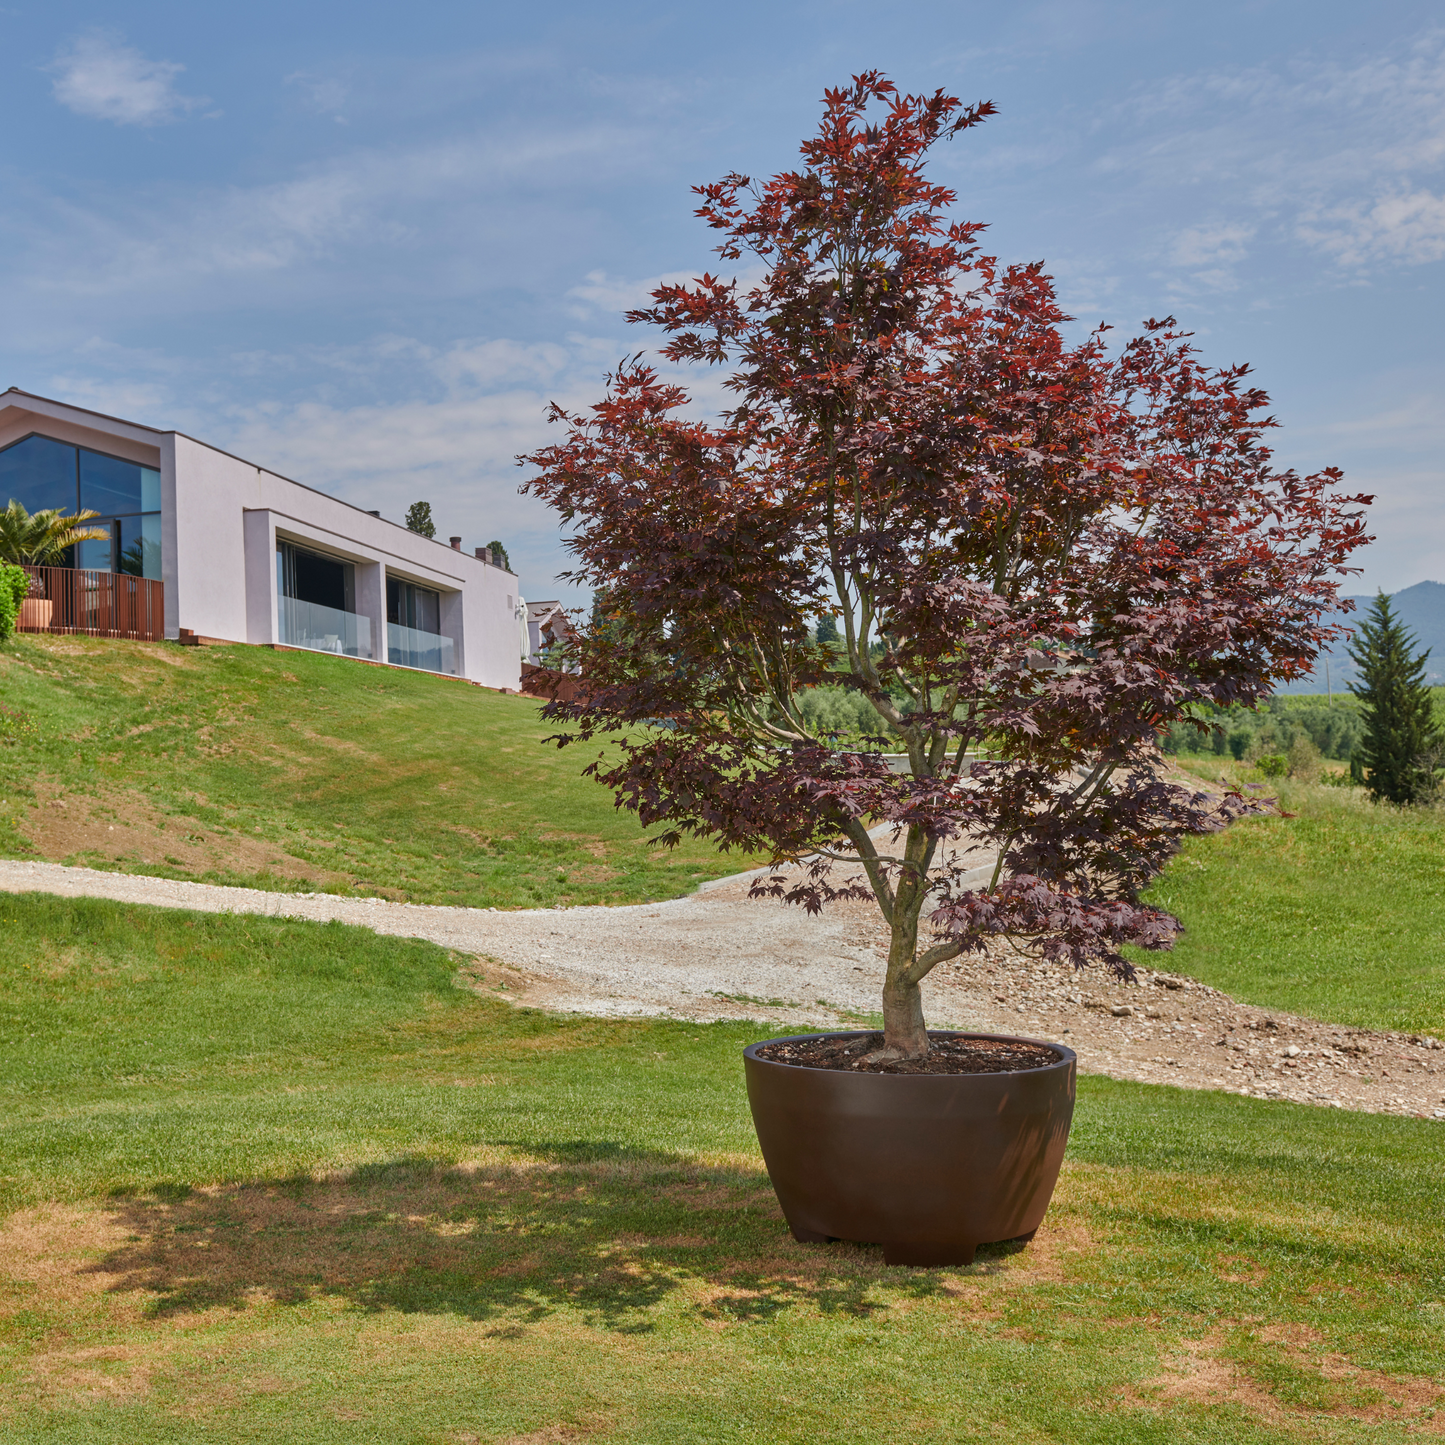 Produktbild staplerfahrbarer mobiler XXL-Topf von Gardapura für große Pflanzen, bepflanzt mit einem schönen Baum auf einer Gartenfläche. Pflanztopf hier in der Farbe Schokolade.